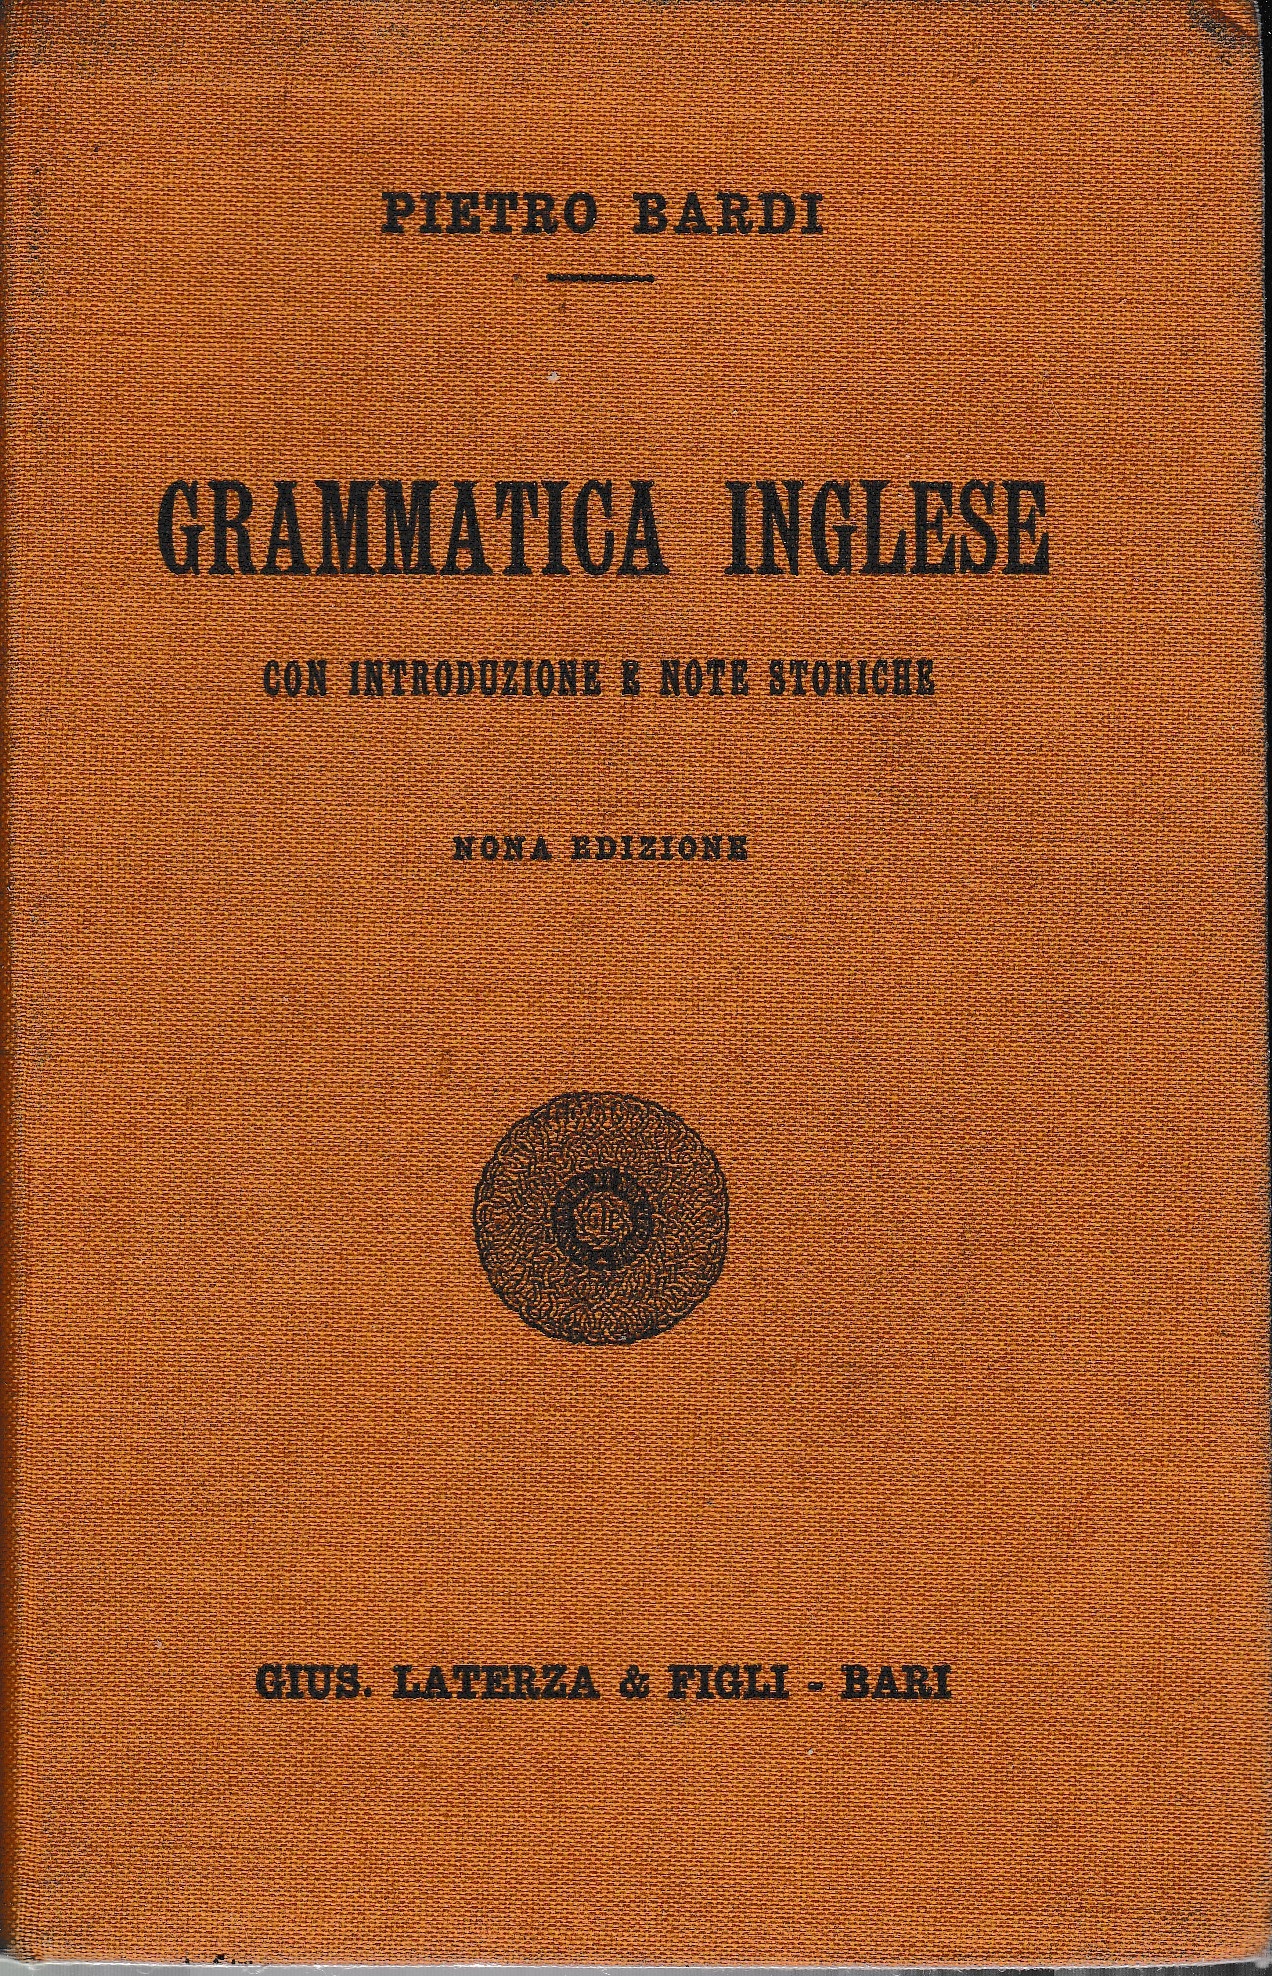 Grammatica inglese con introduzione e note storiche by P. Bardi: Buono  (Good) (1935)